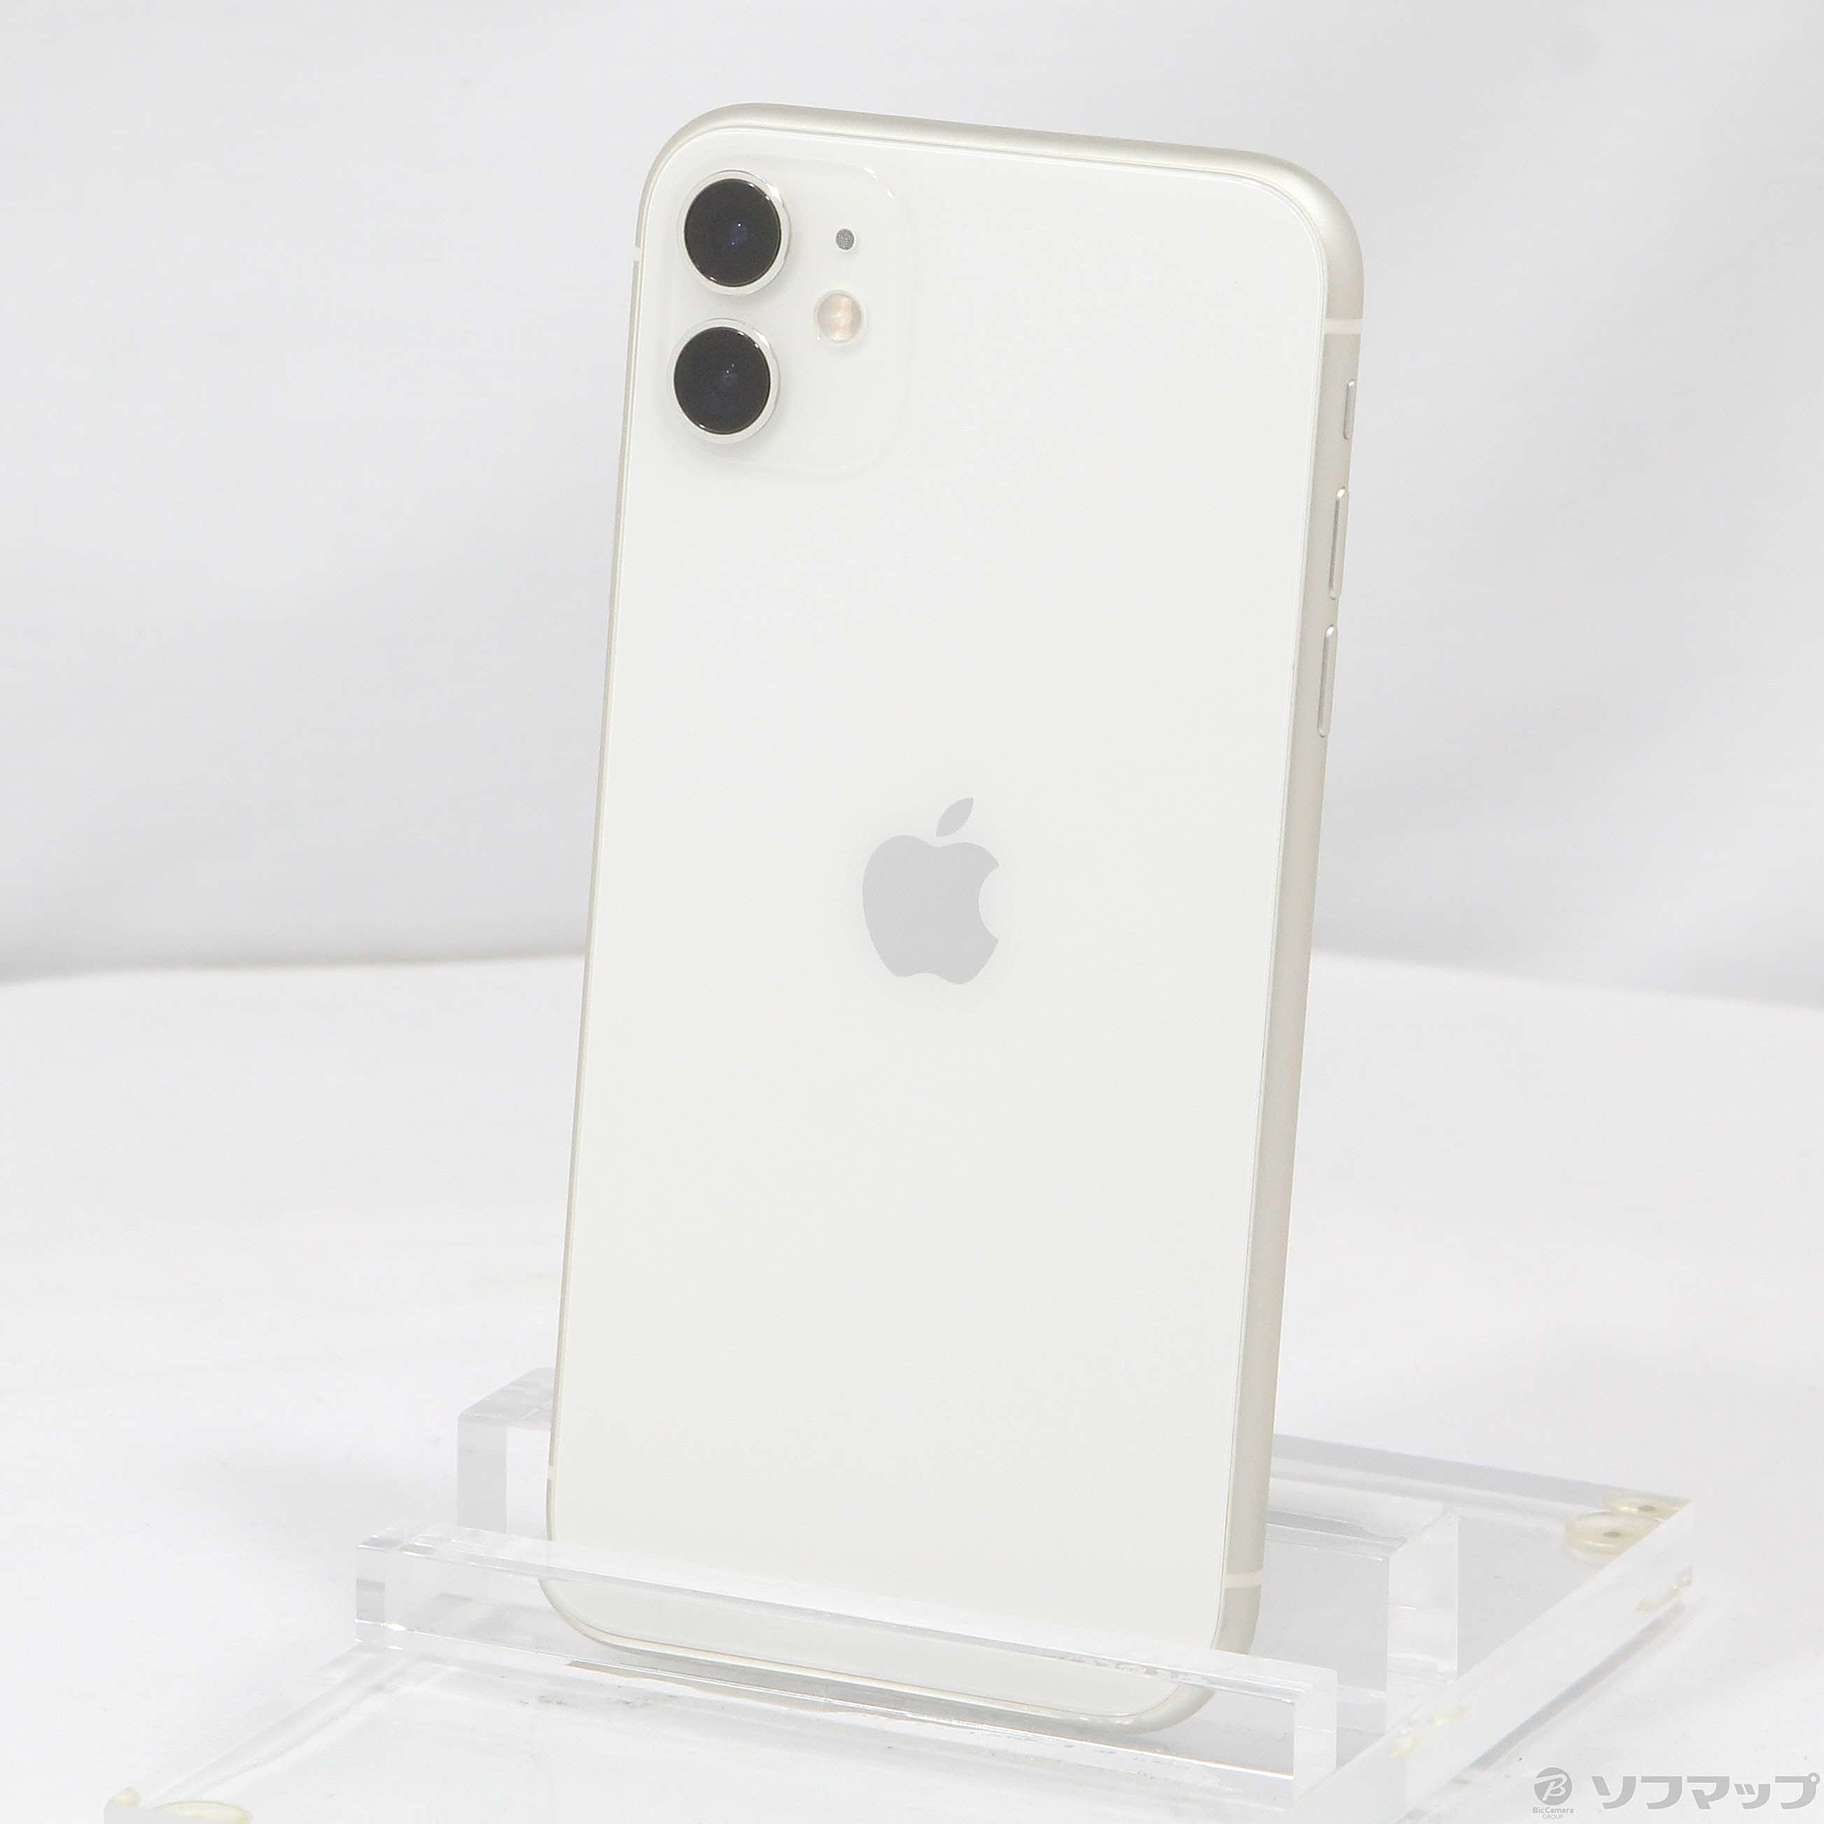 Apple アップル iPhone11 64GB ホワイト